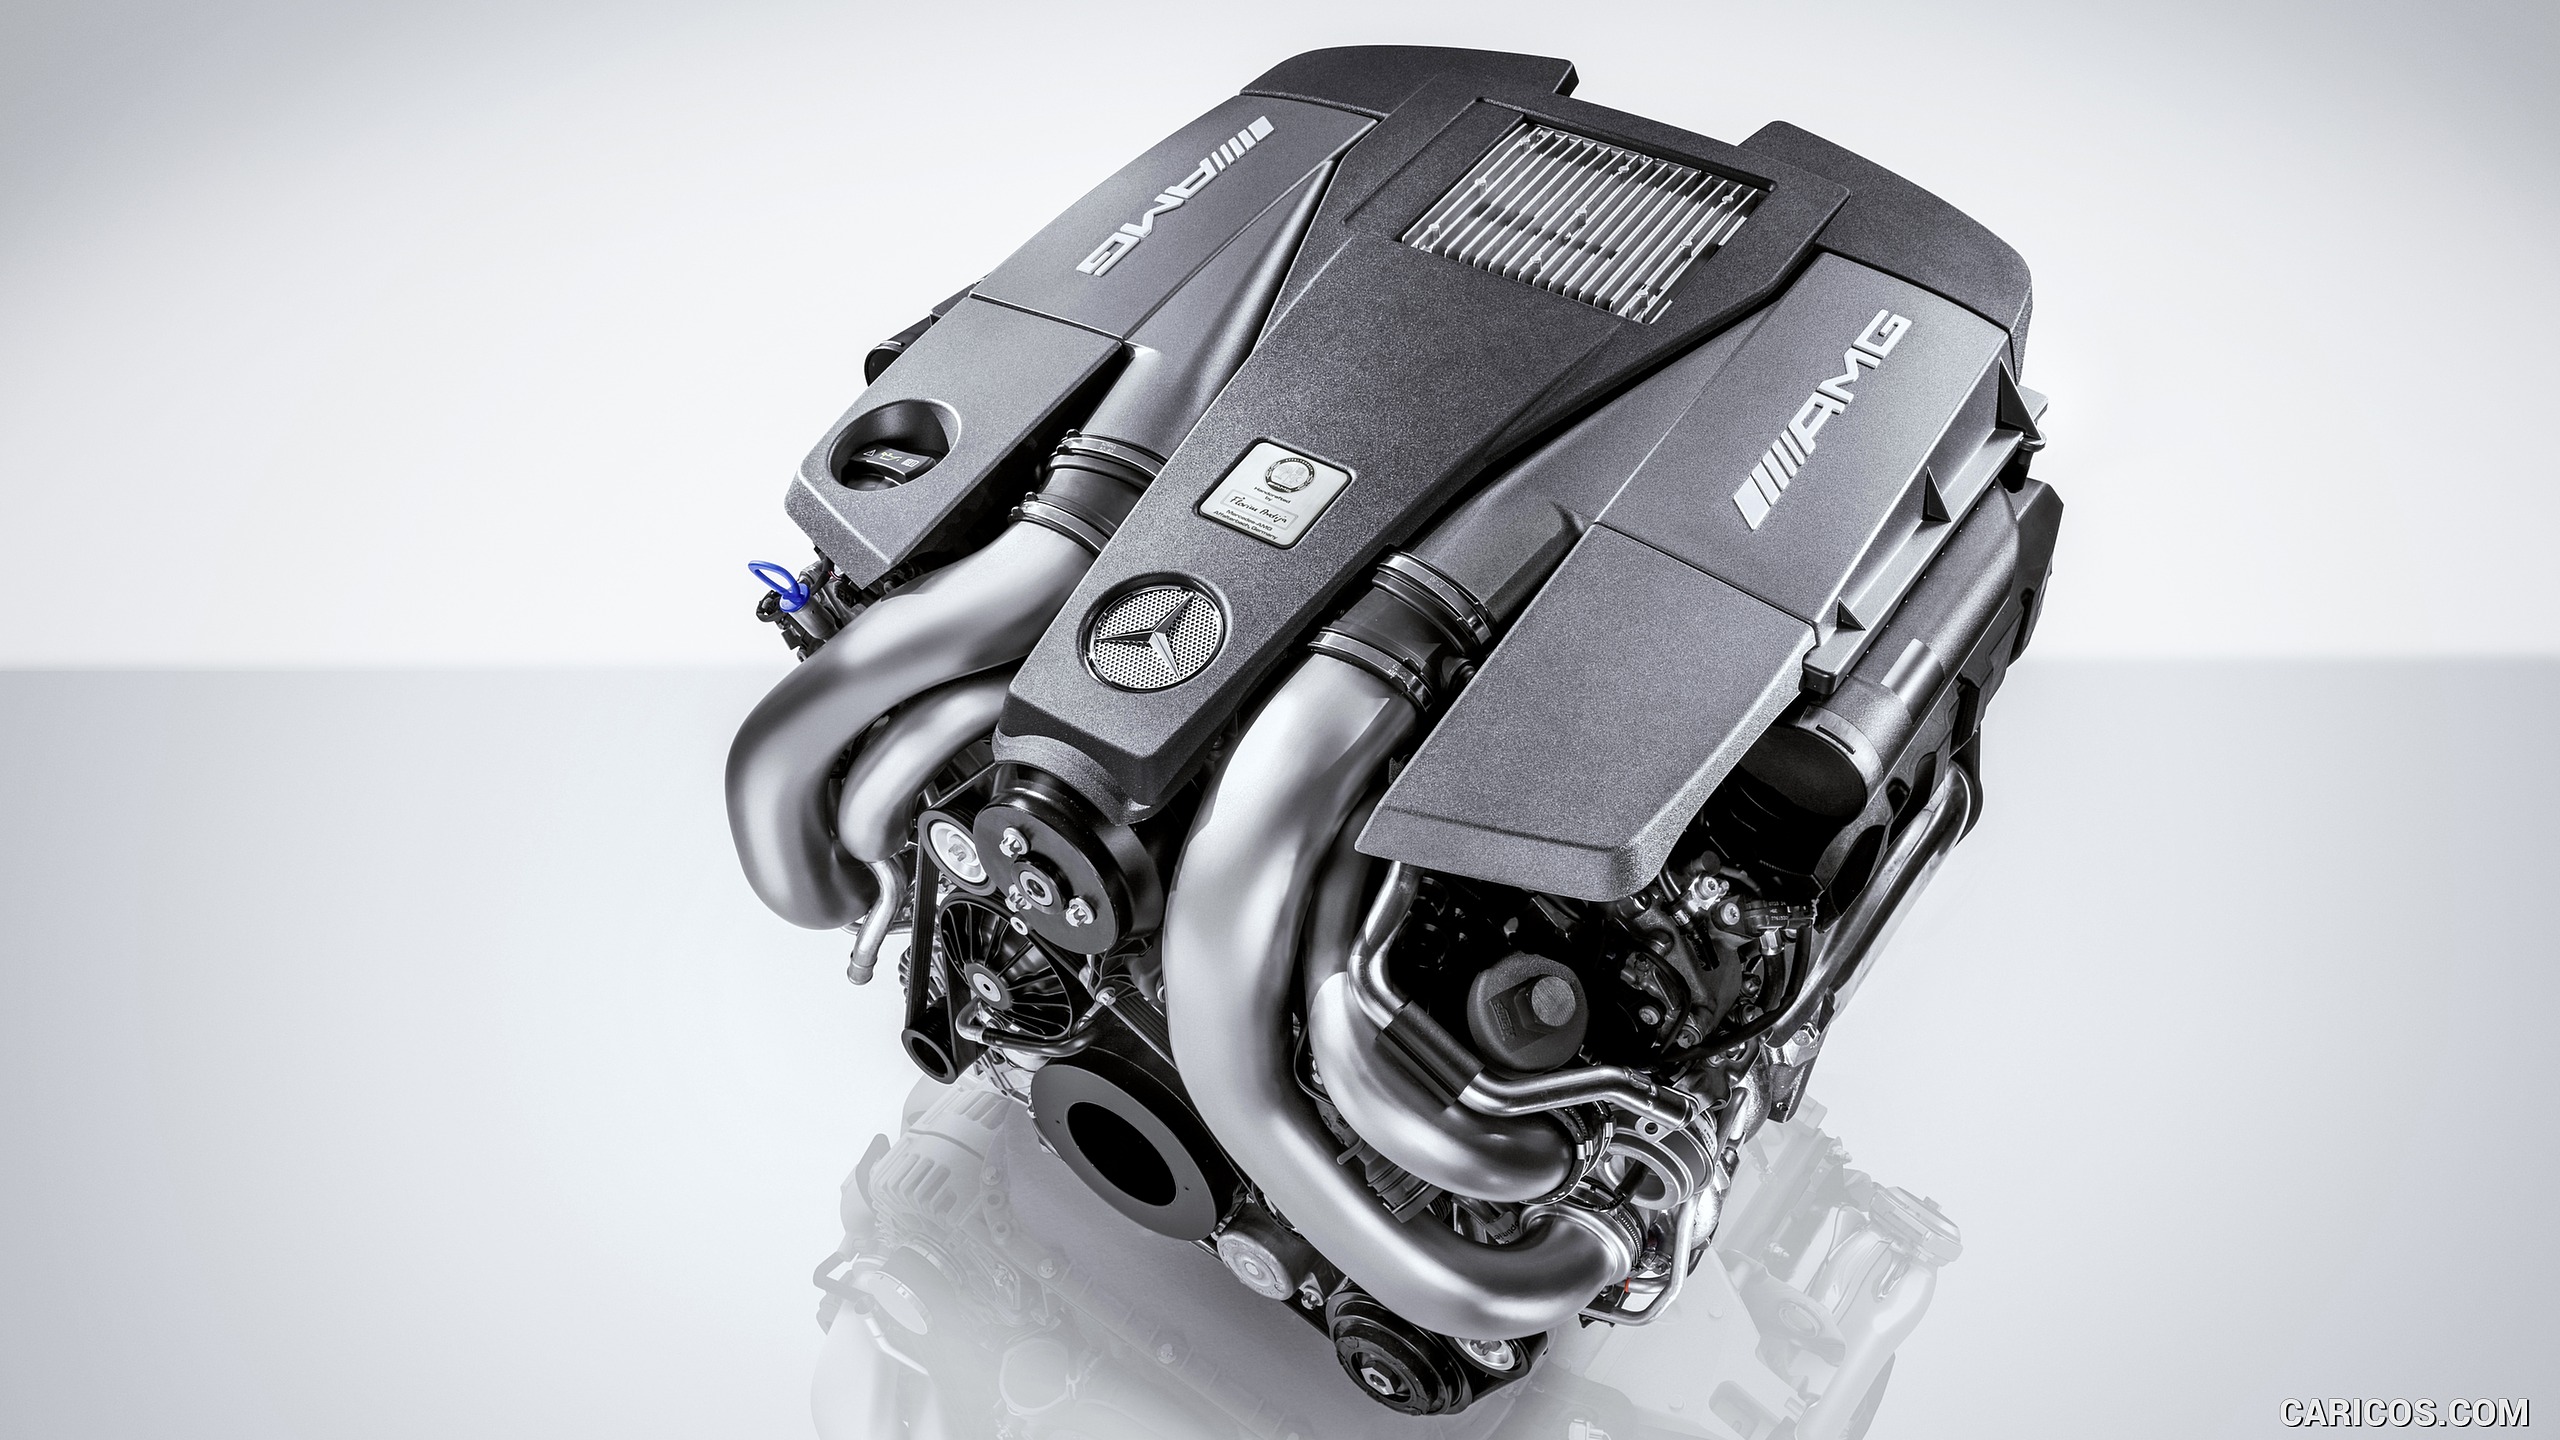 2016 Mercedes-AMG GLE 63 S (Designo Diamond White Bright) - 5.5L V8-Biturbo Engine, #29 of 68